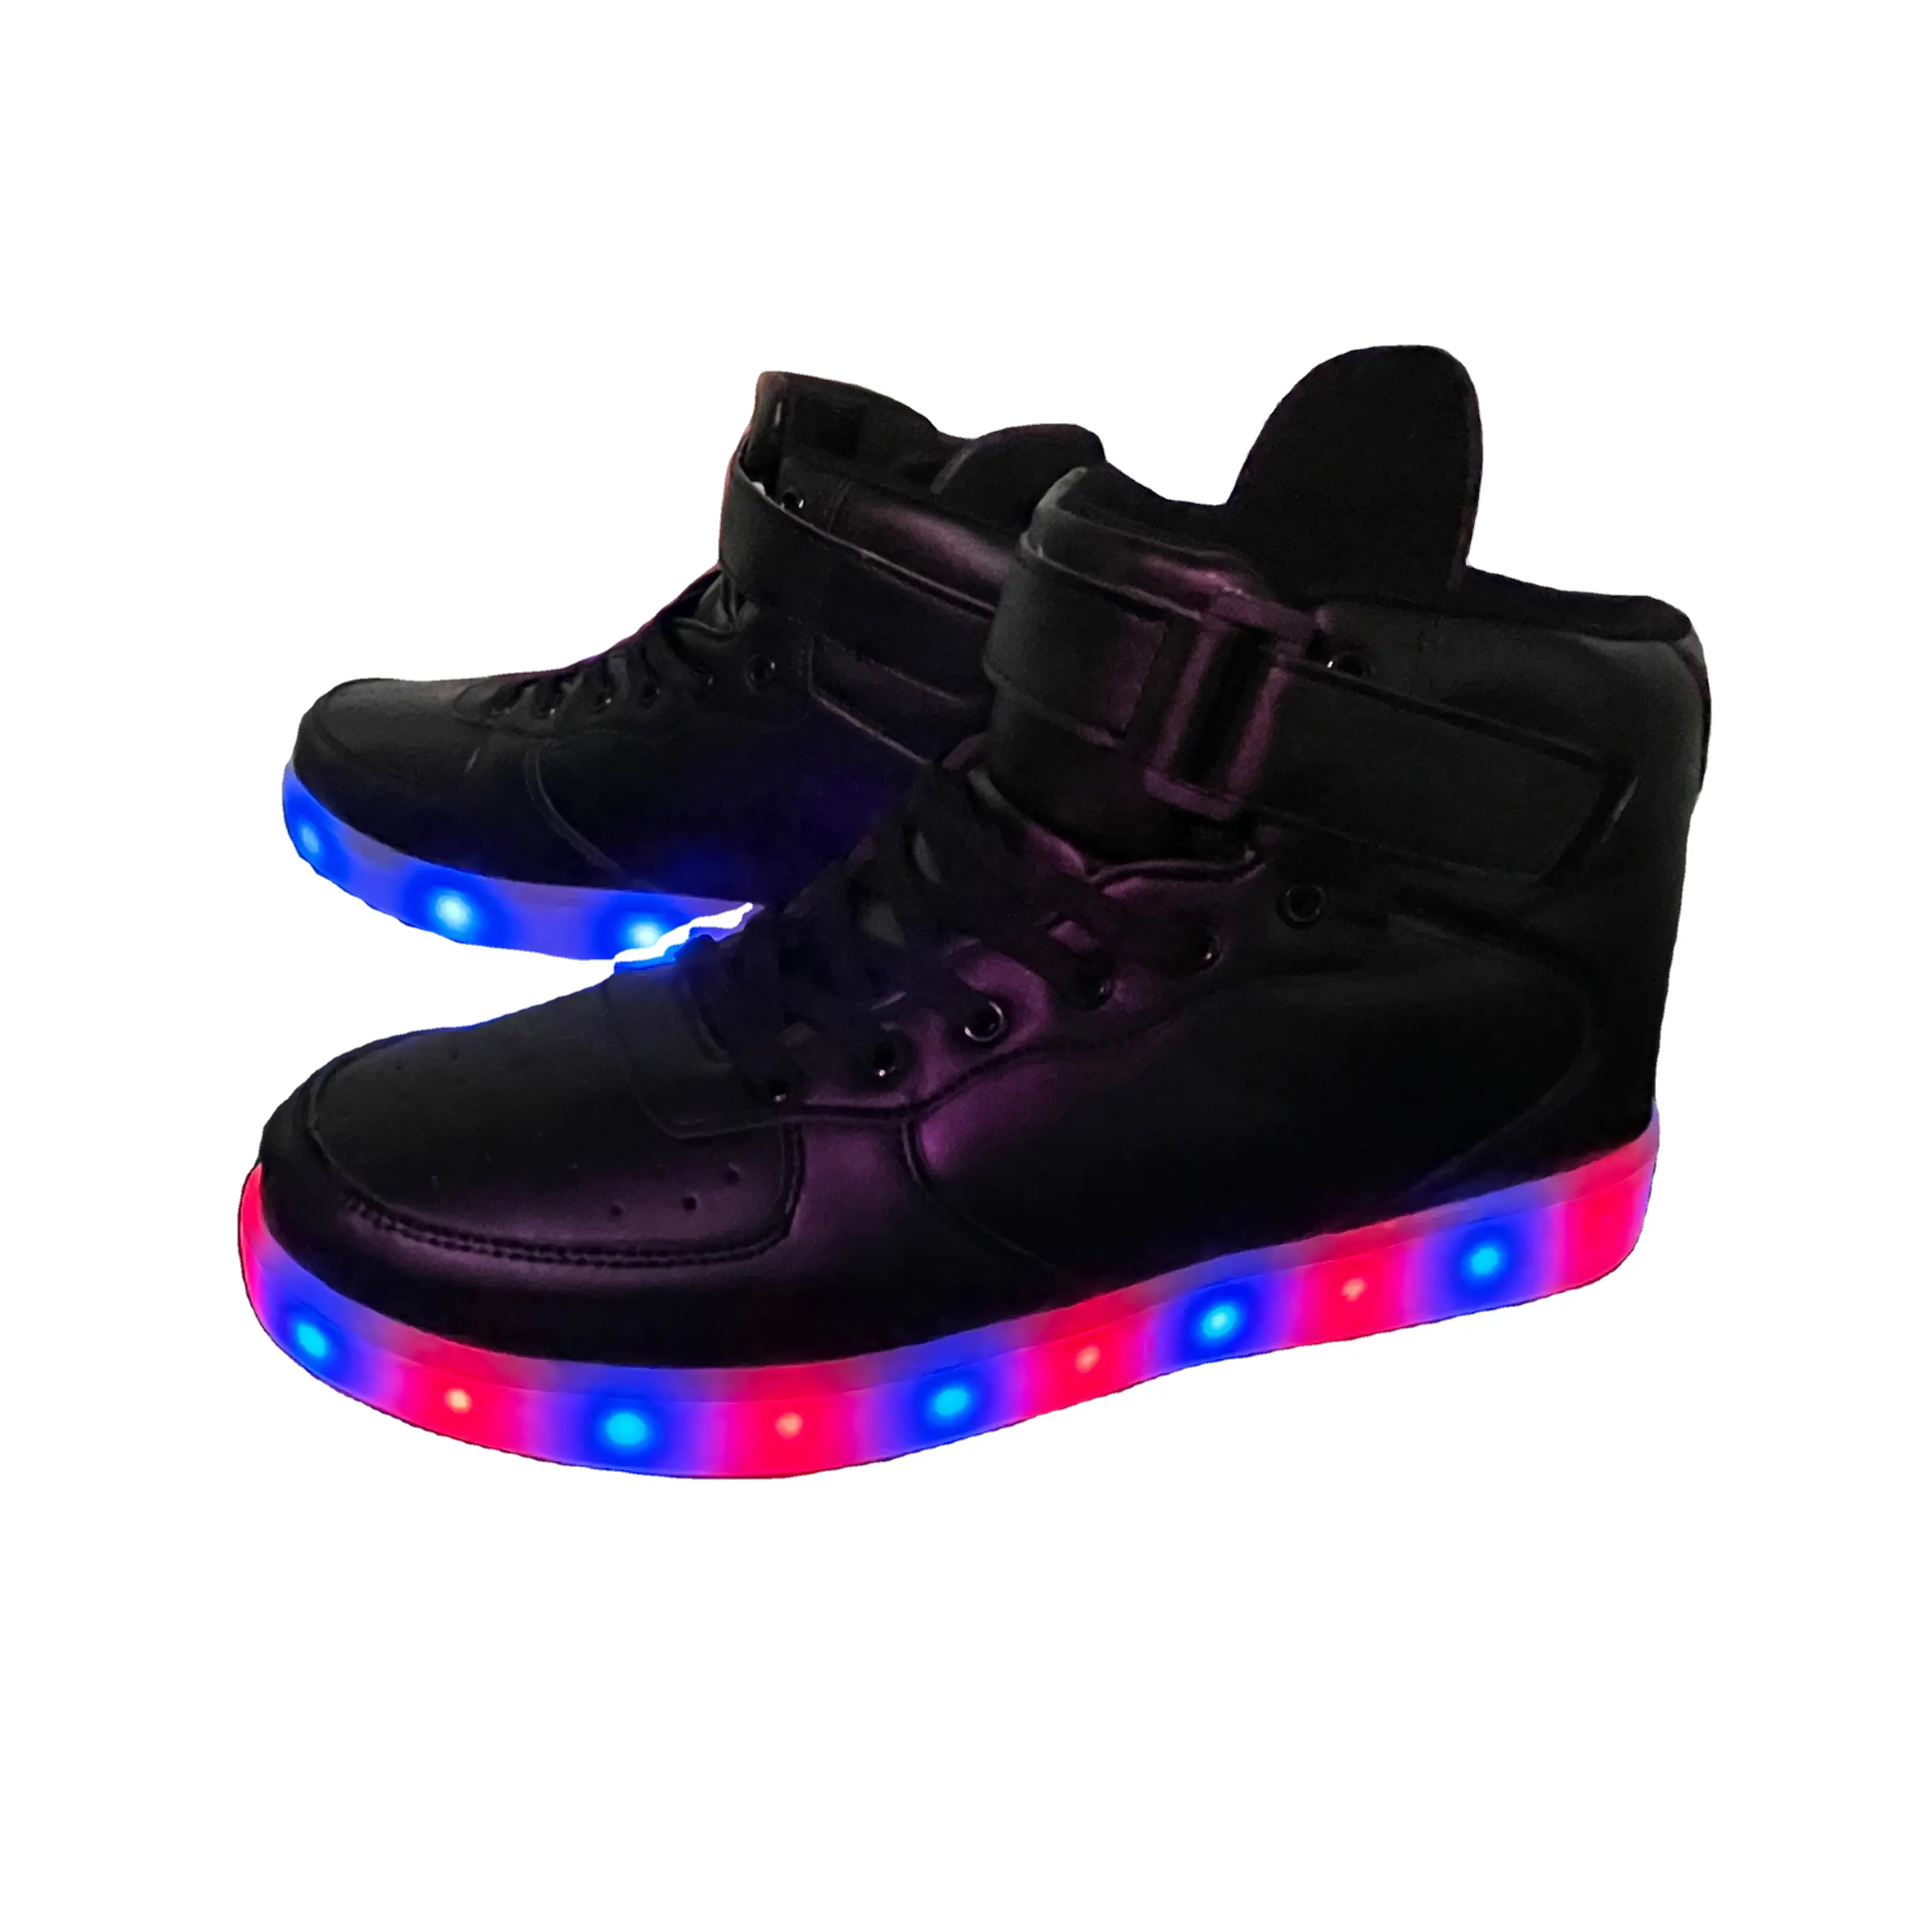 Rave-Zapatillas deportivas de neón con luz LED y carga USB, para baile y Carnaval, 2021